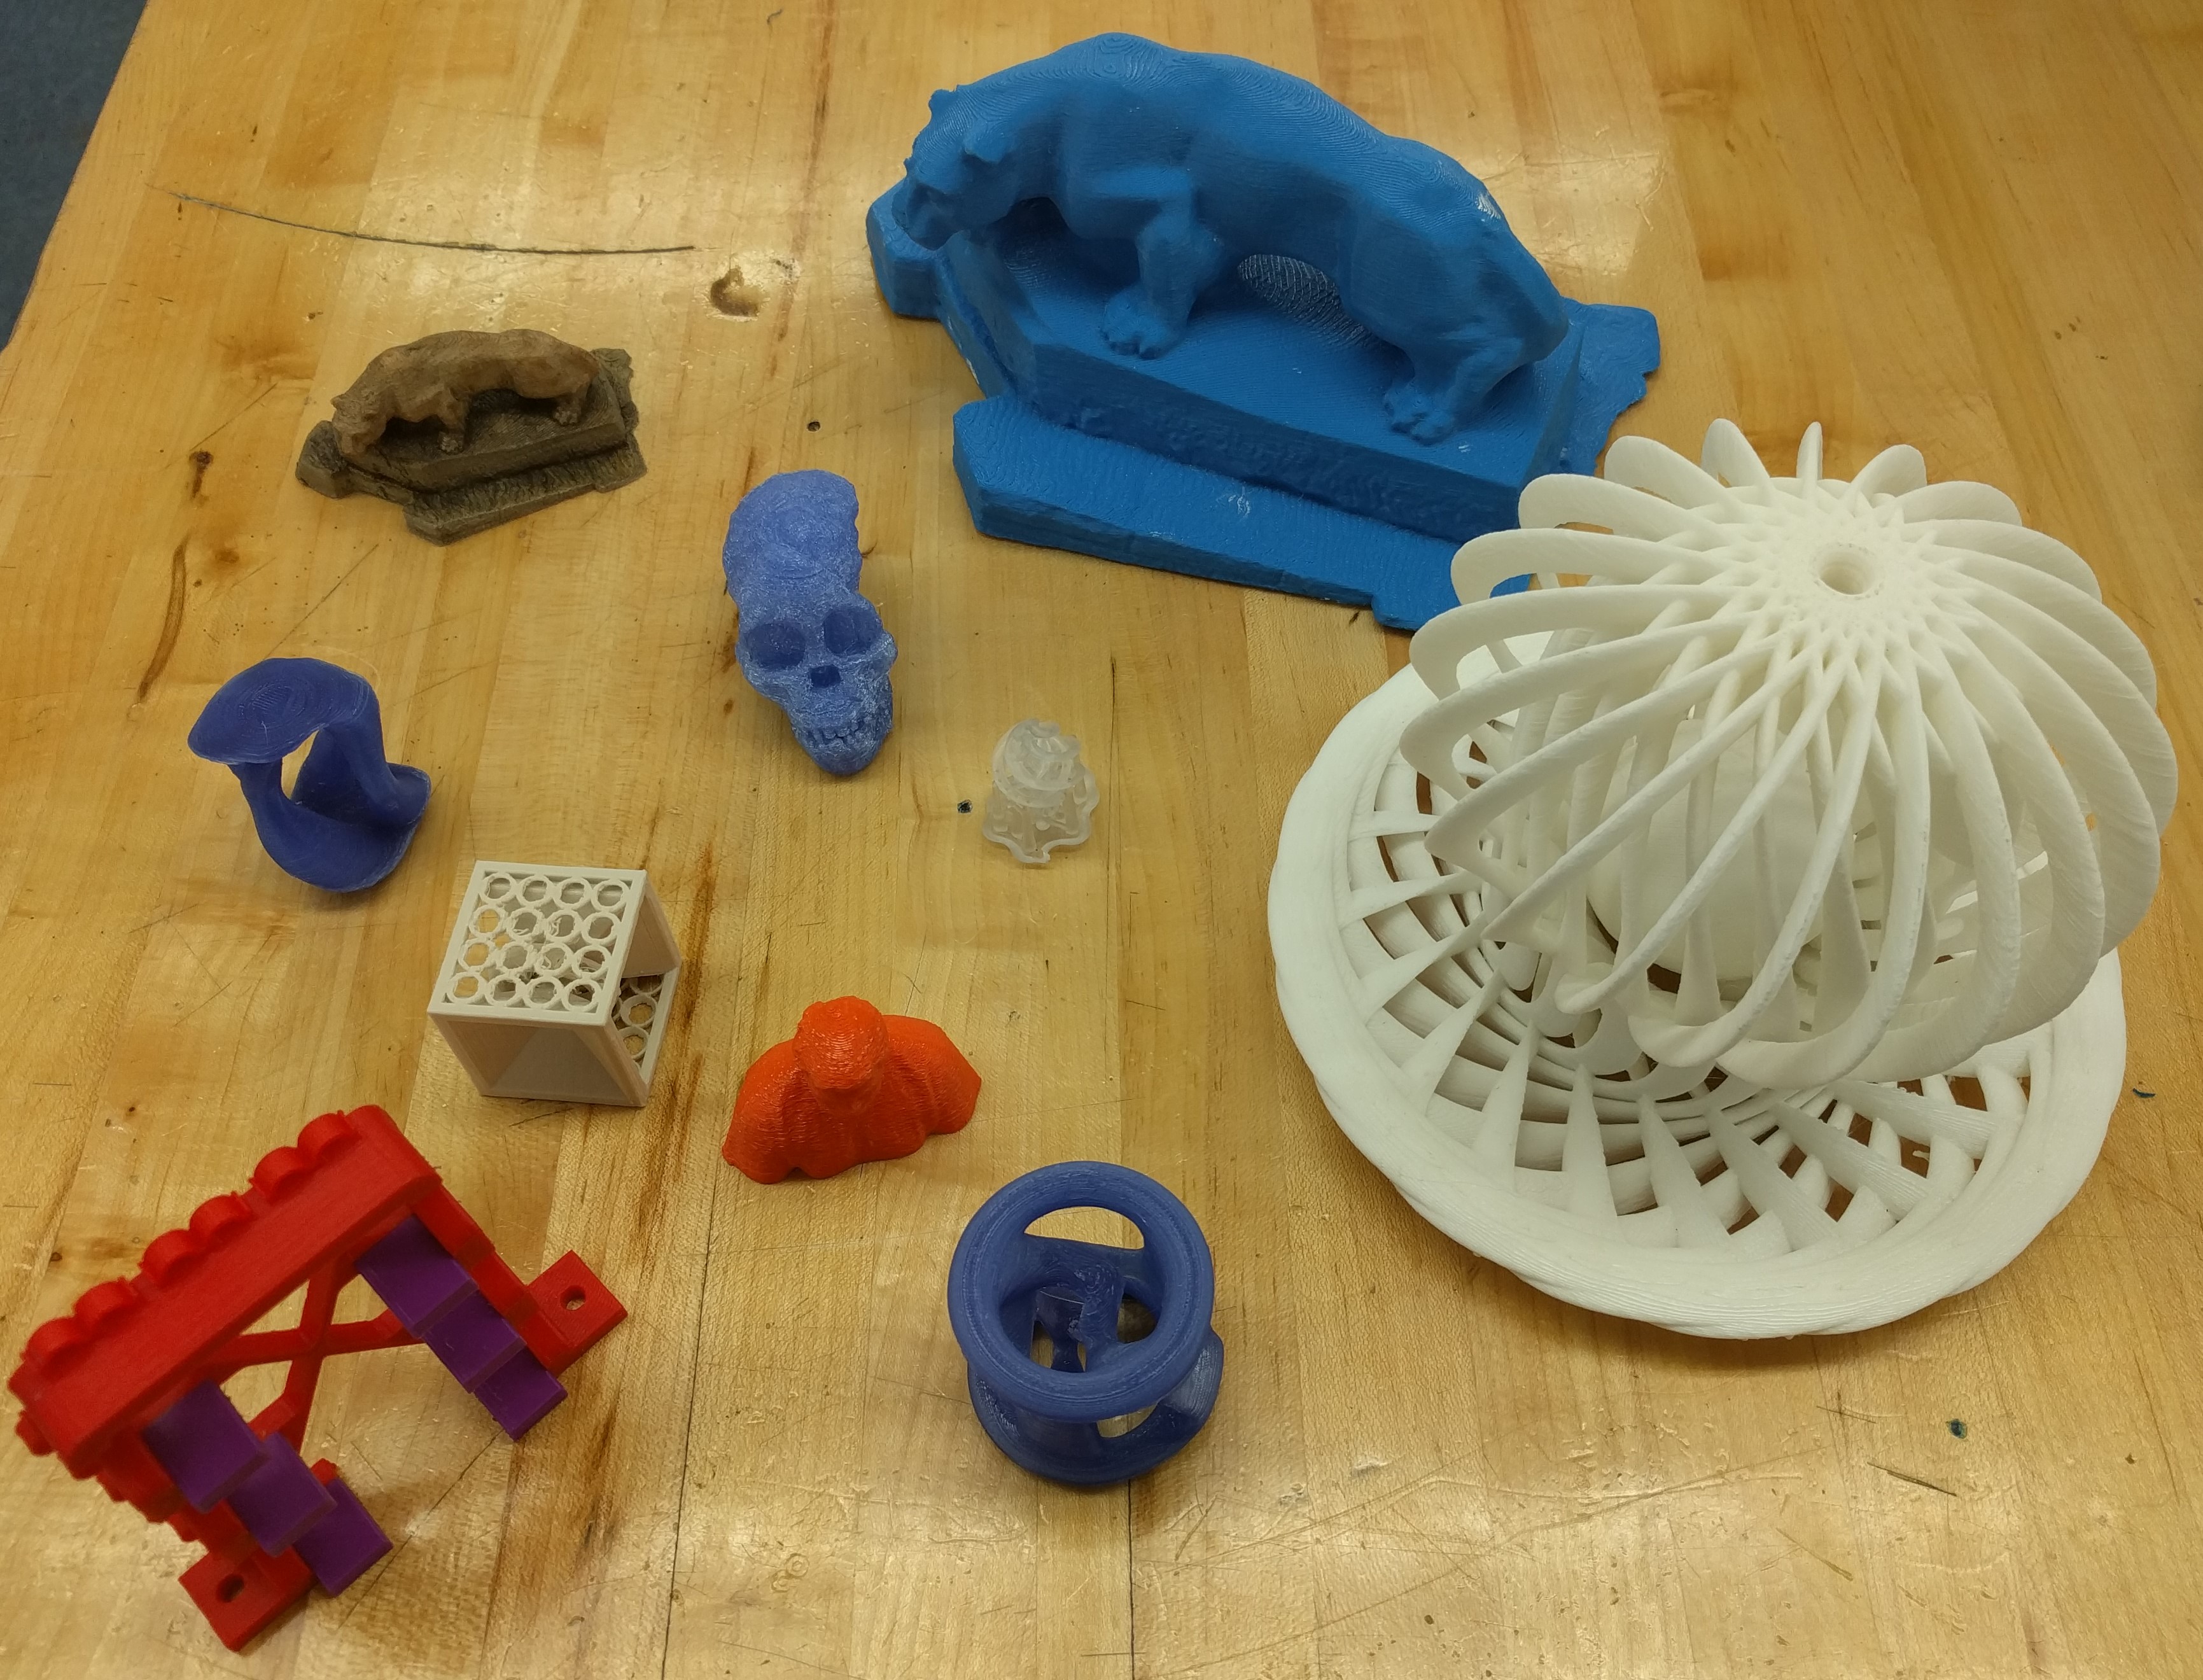 Penn State 3D Printing Club